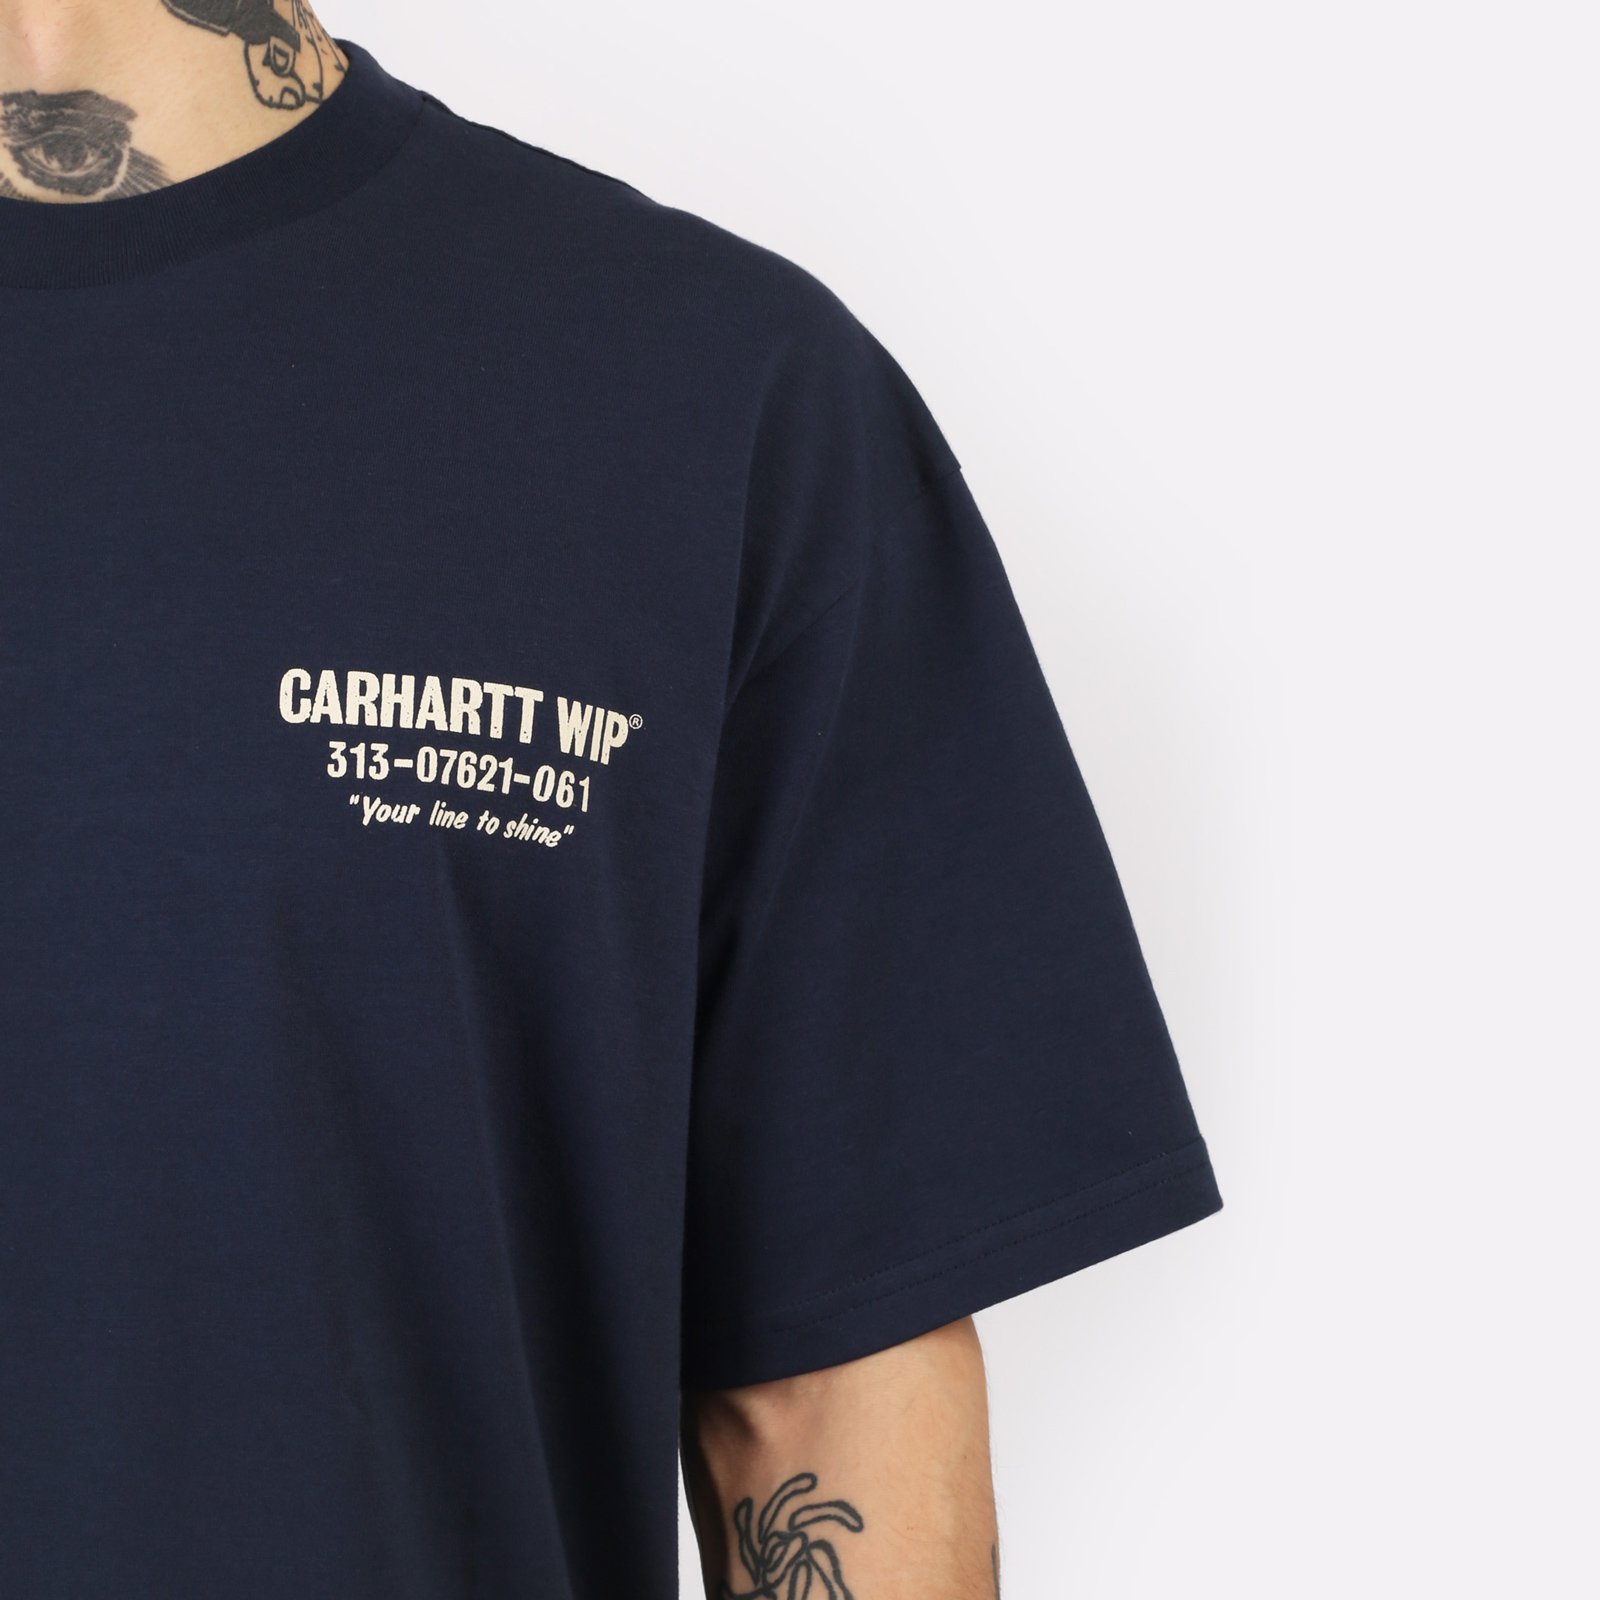 мужская футболка Carhartt WIP S/S Less Troubles T-Shirt  (I033187-blue/wax)  - цена, описание, фото 5